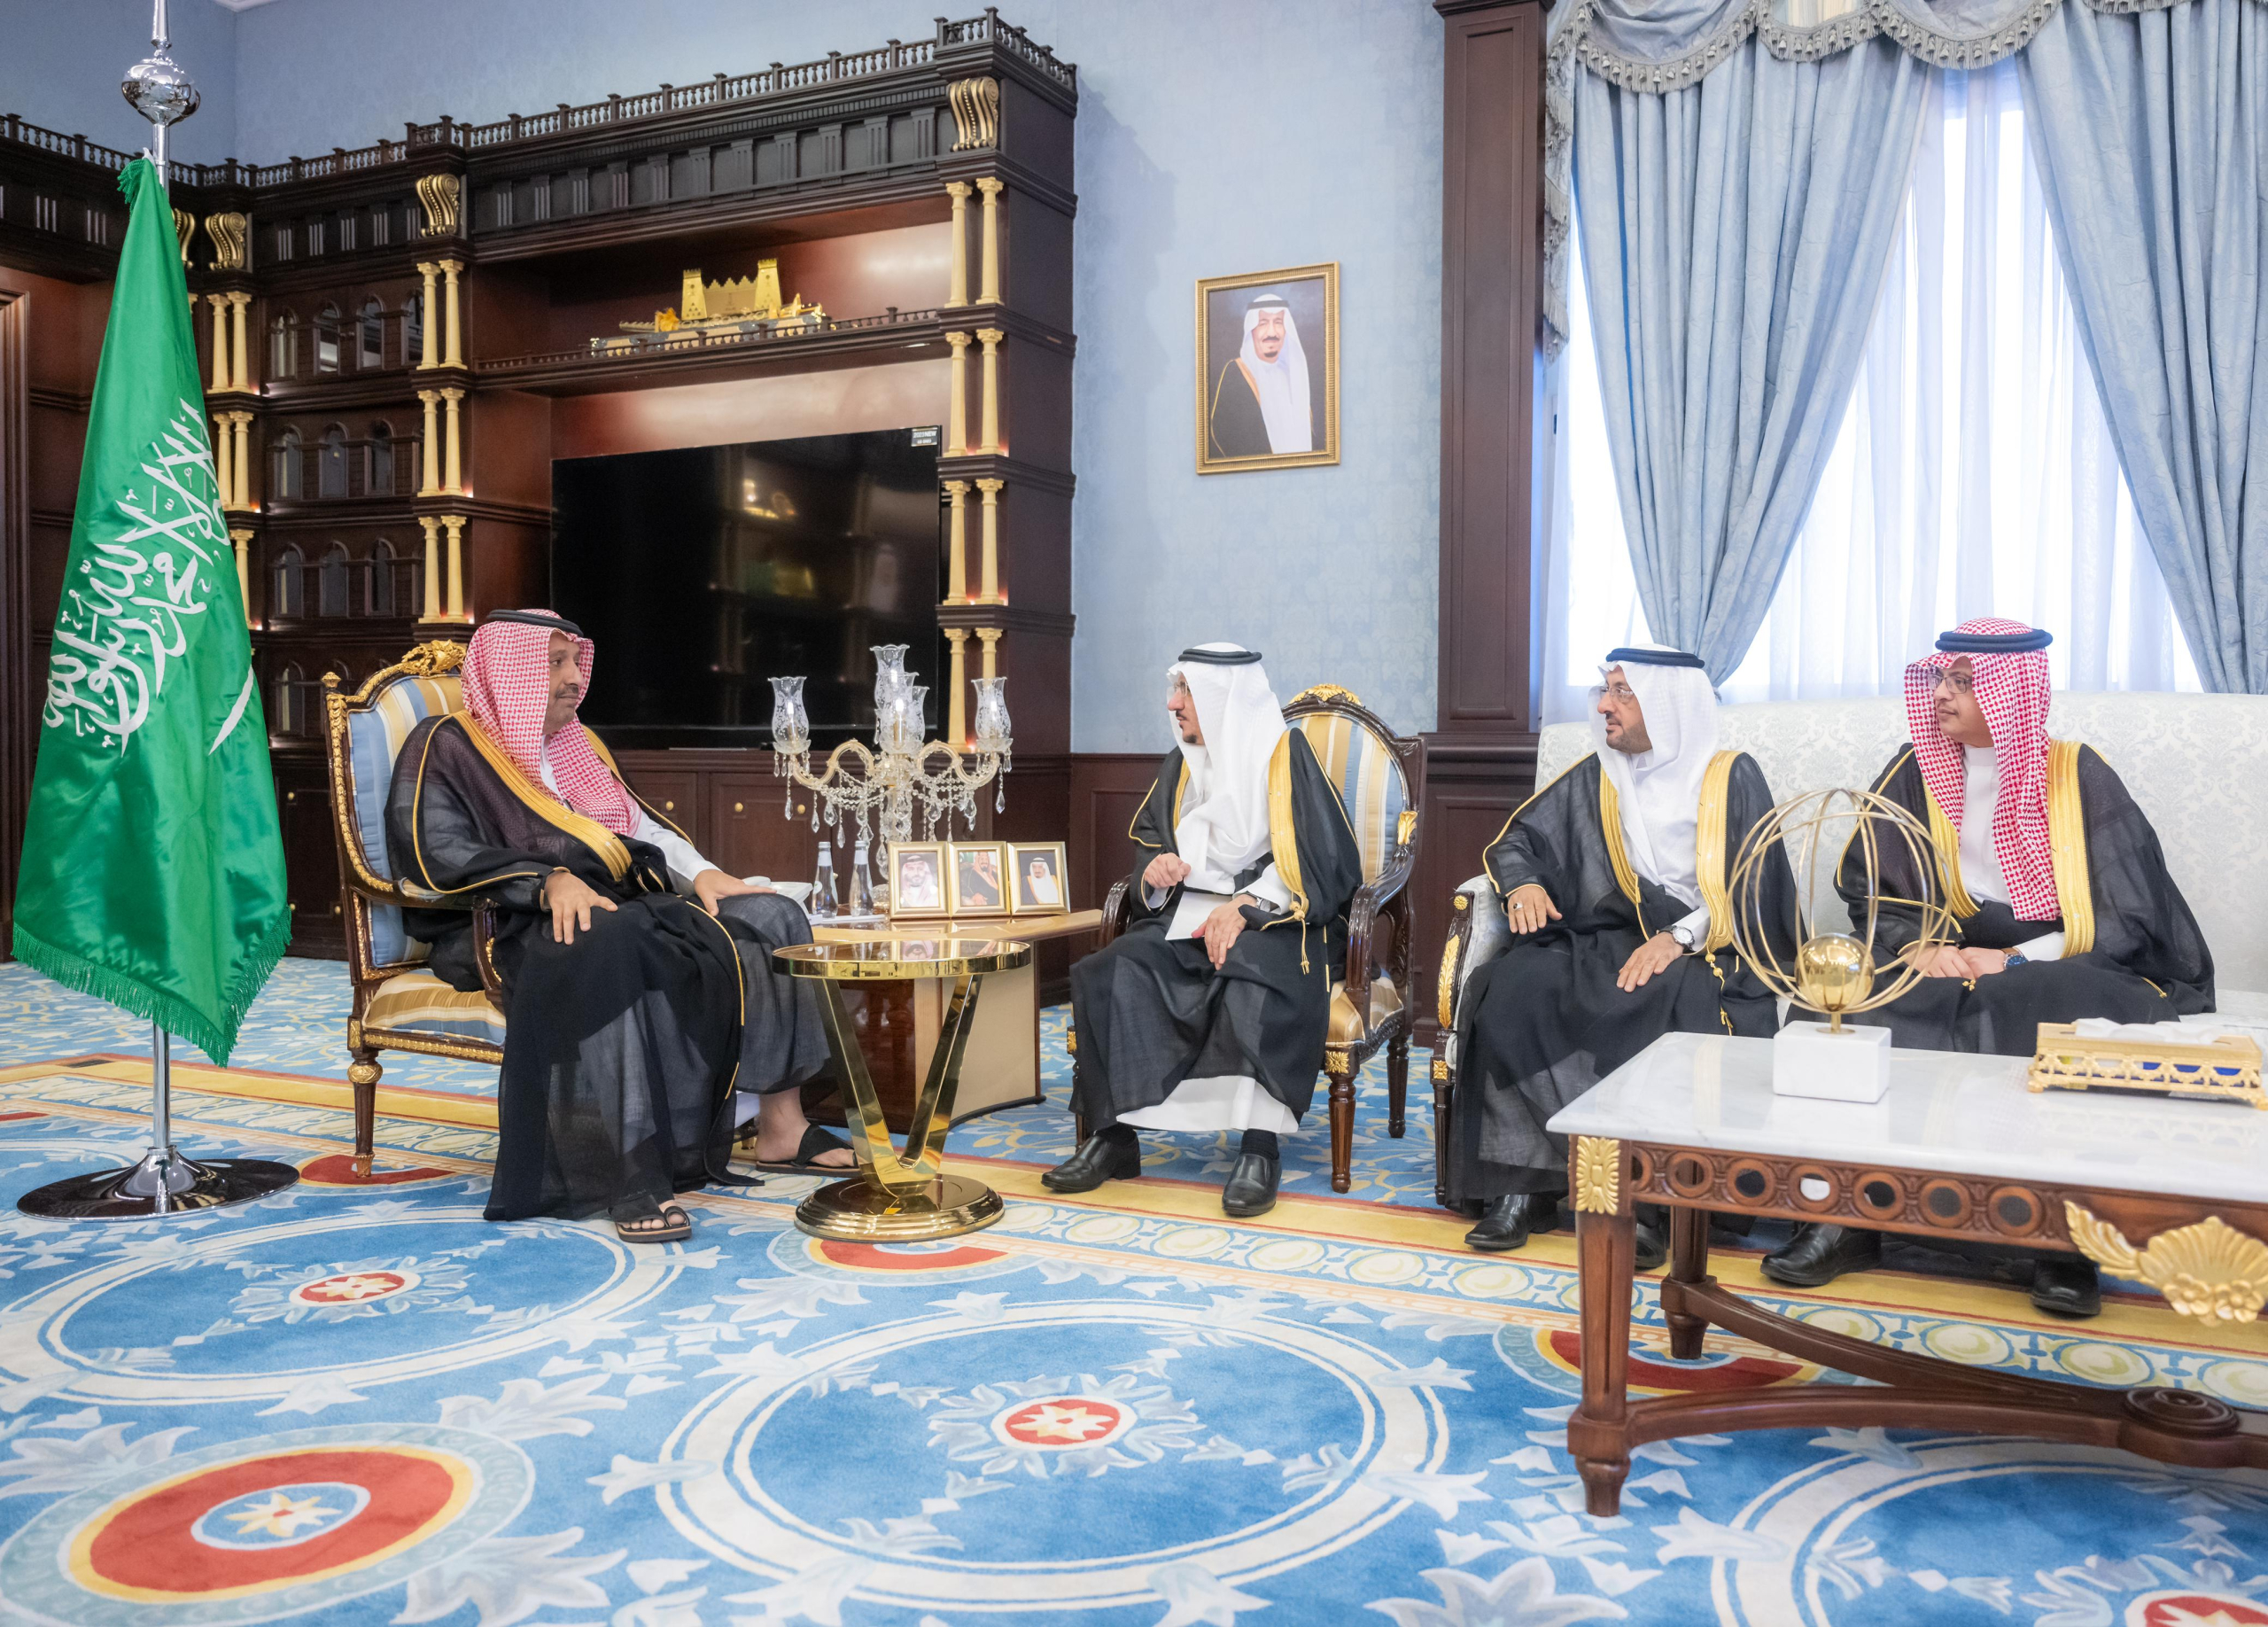 أمير الباحة يستقبل معالي رئيس الجامعة لاستعراض إعادة الهيكلة الشاملة للجامعة